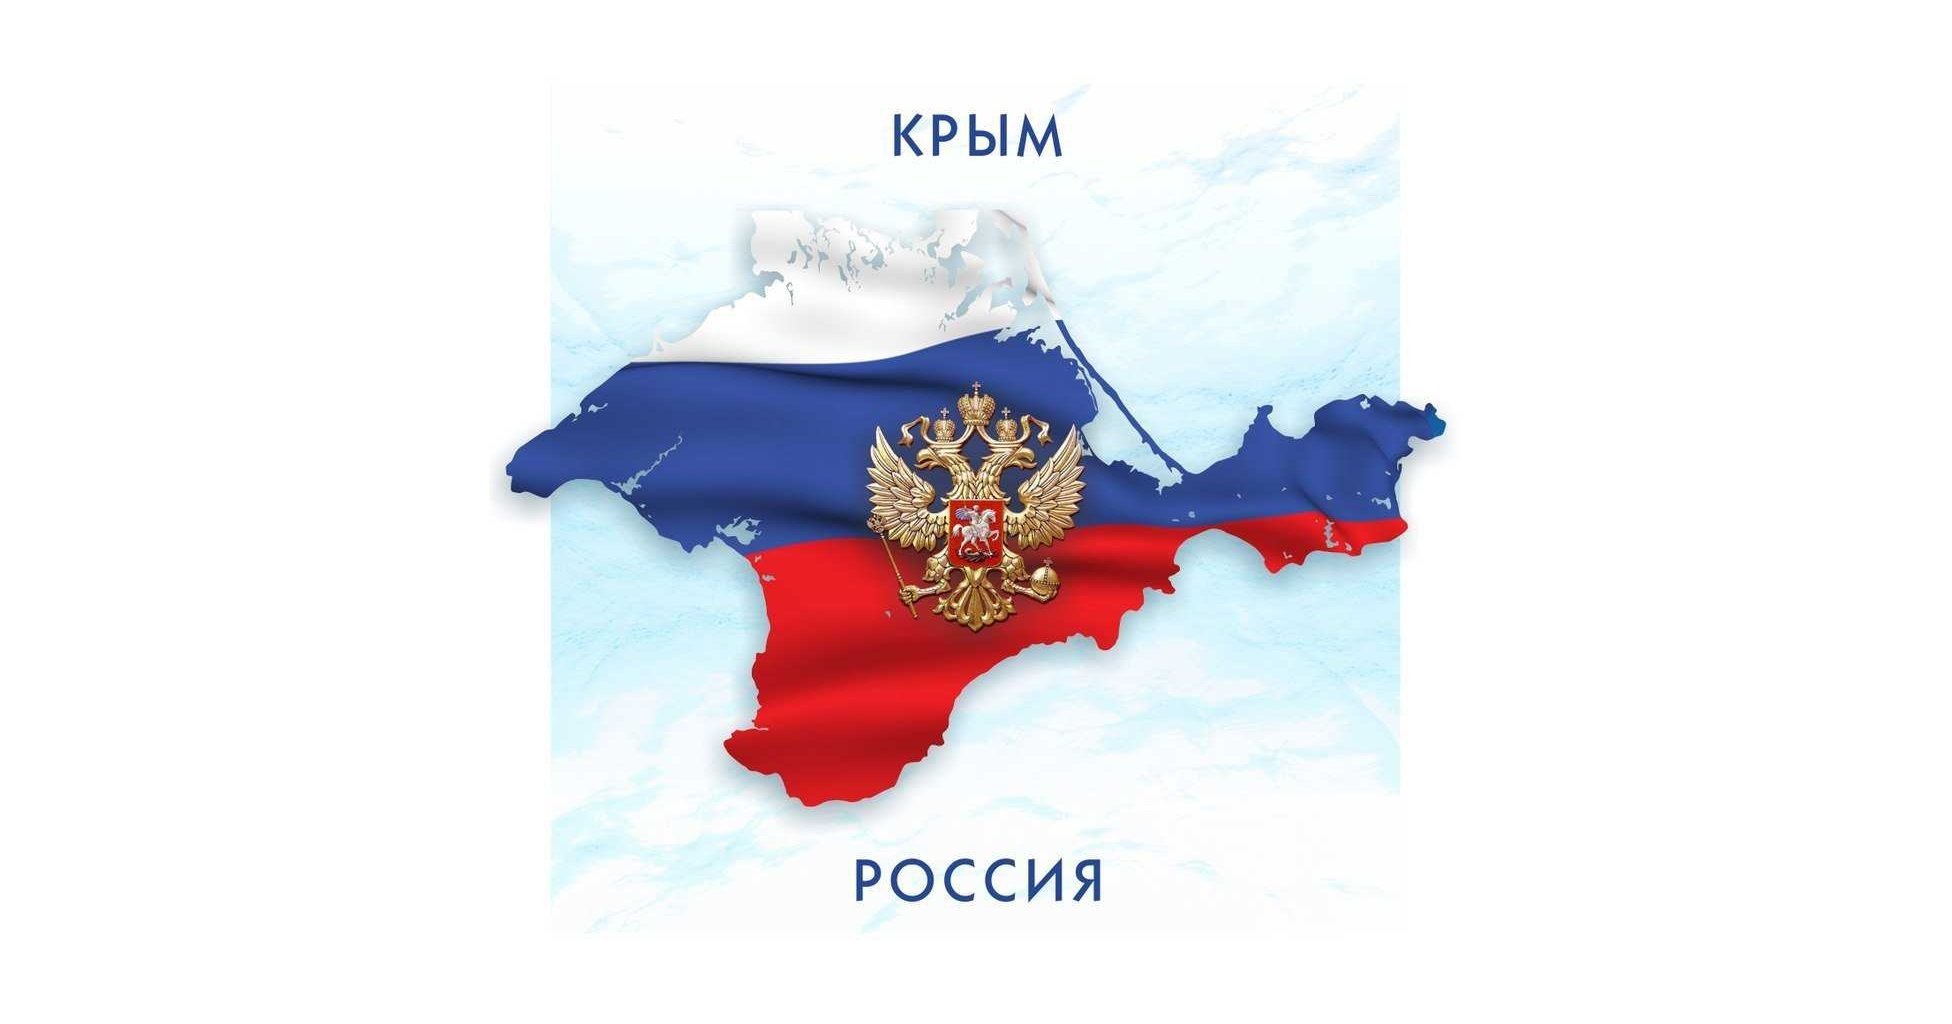 Крым это россия картинки